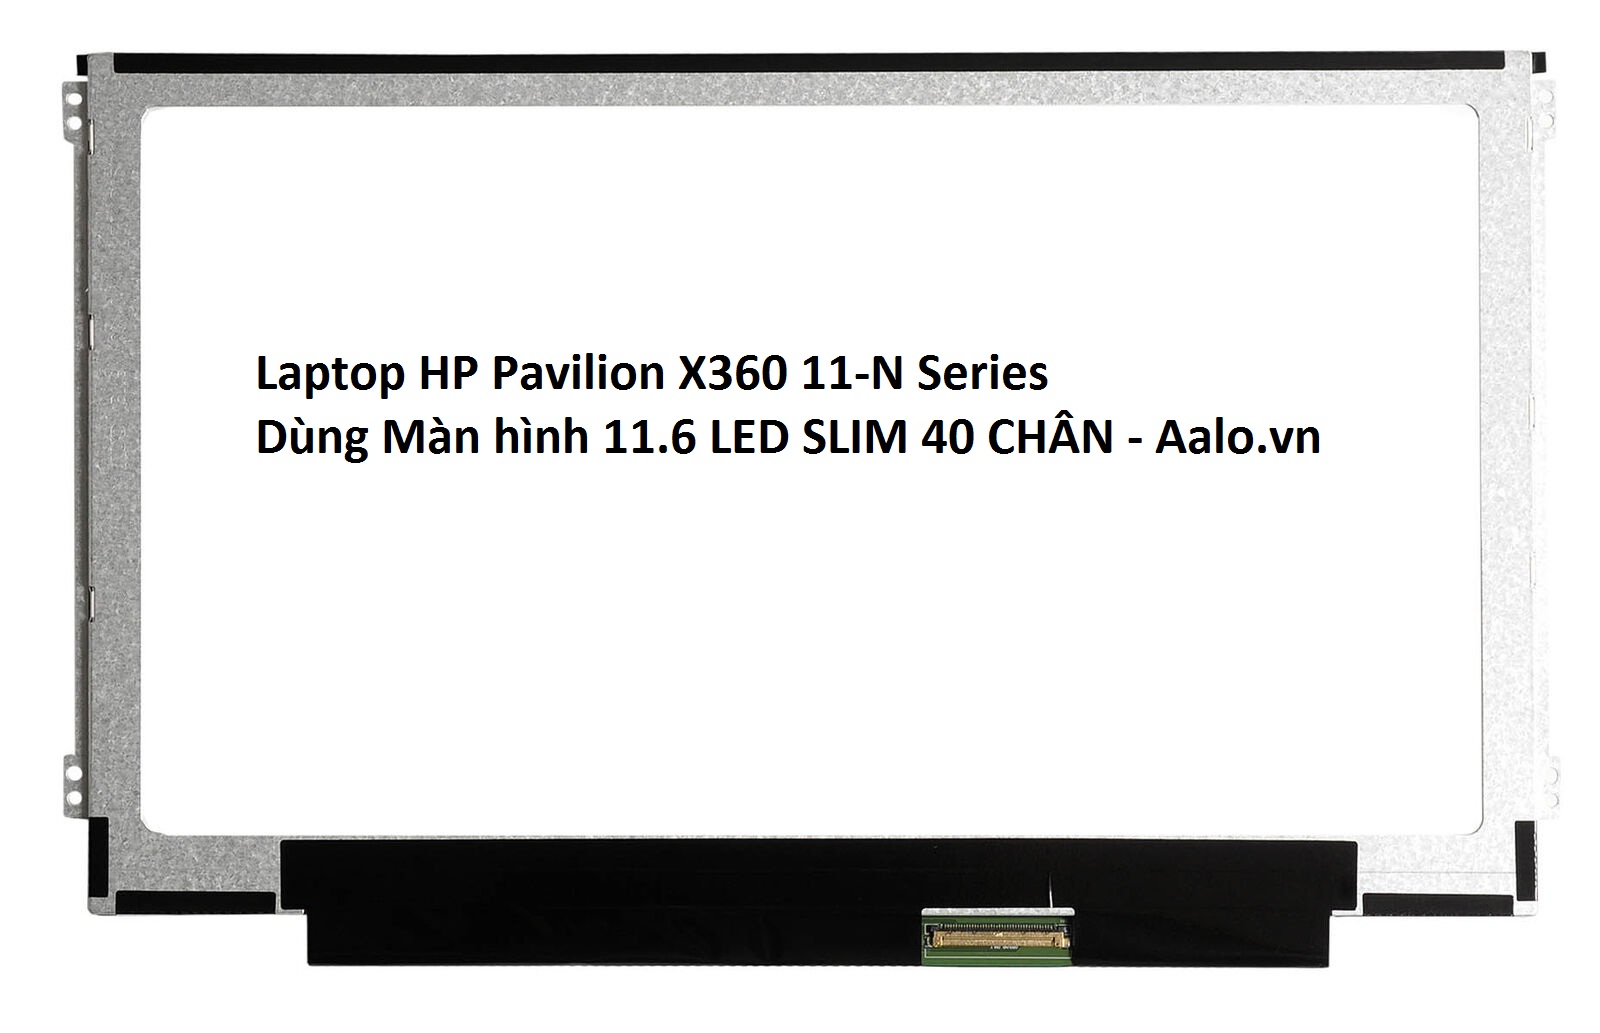 Màn hình Laptop HP Pavilion X360 11-N Series - Aalo.vn